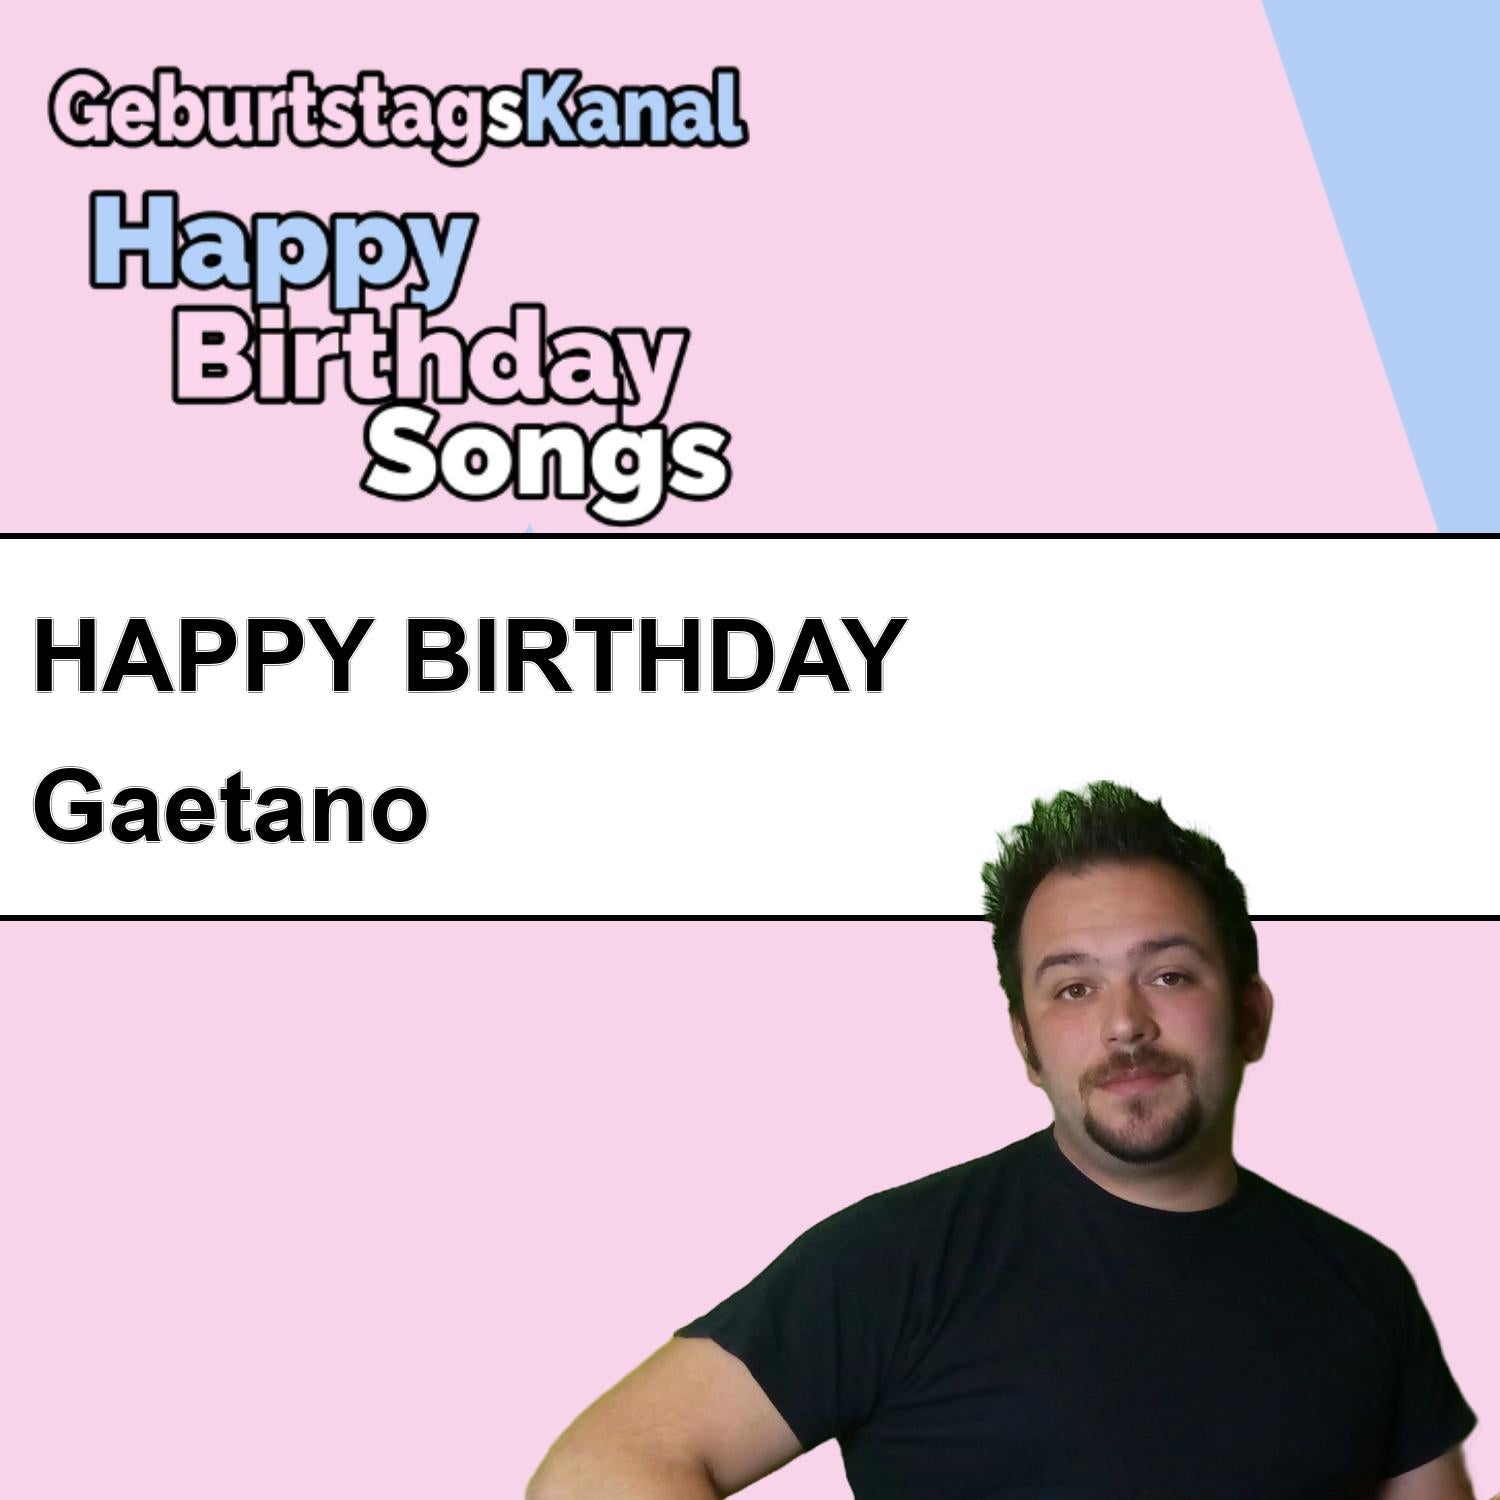 Produktbild Happy Birthday to you Gaetano mit Wunschgrußbotschaft